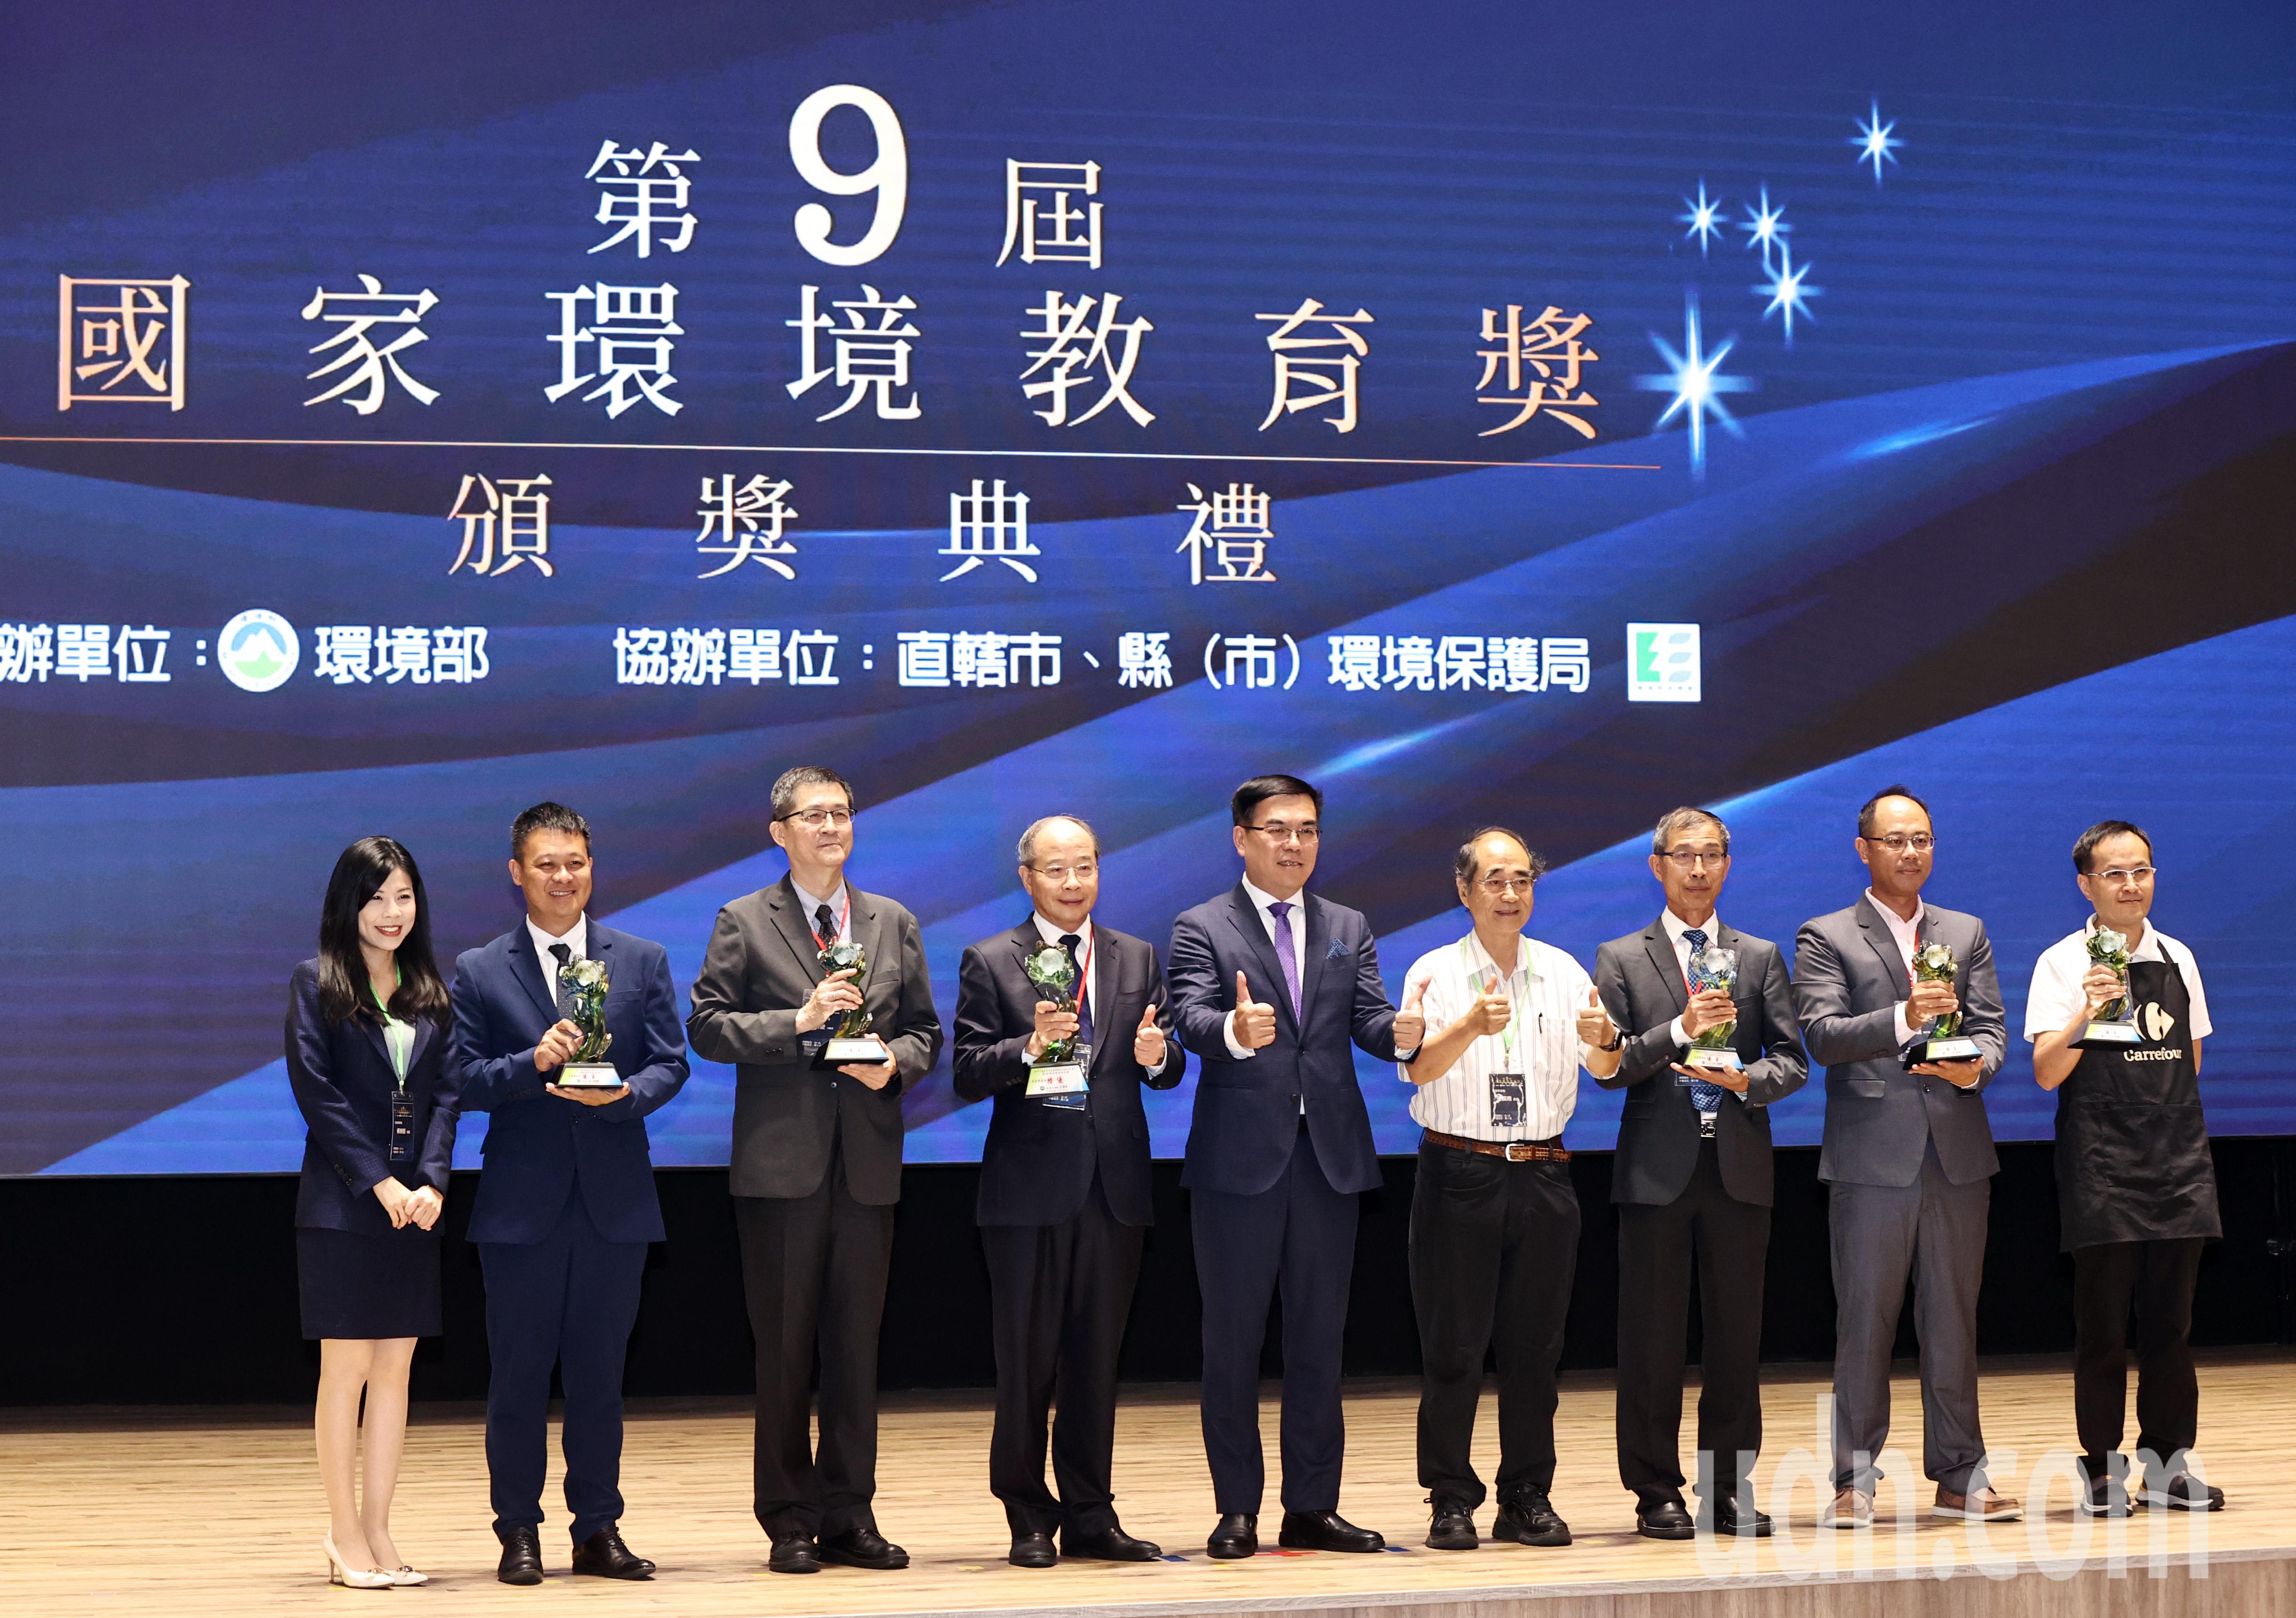 环境部长彭启明（中）在「第9届国家环境教育奖」颁奖典礼上颁奖给得奖的个人与团体。记者杜建重／摄影